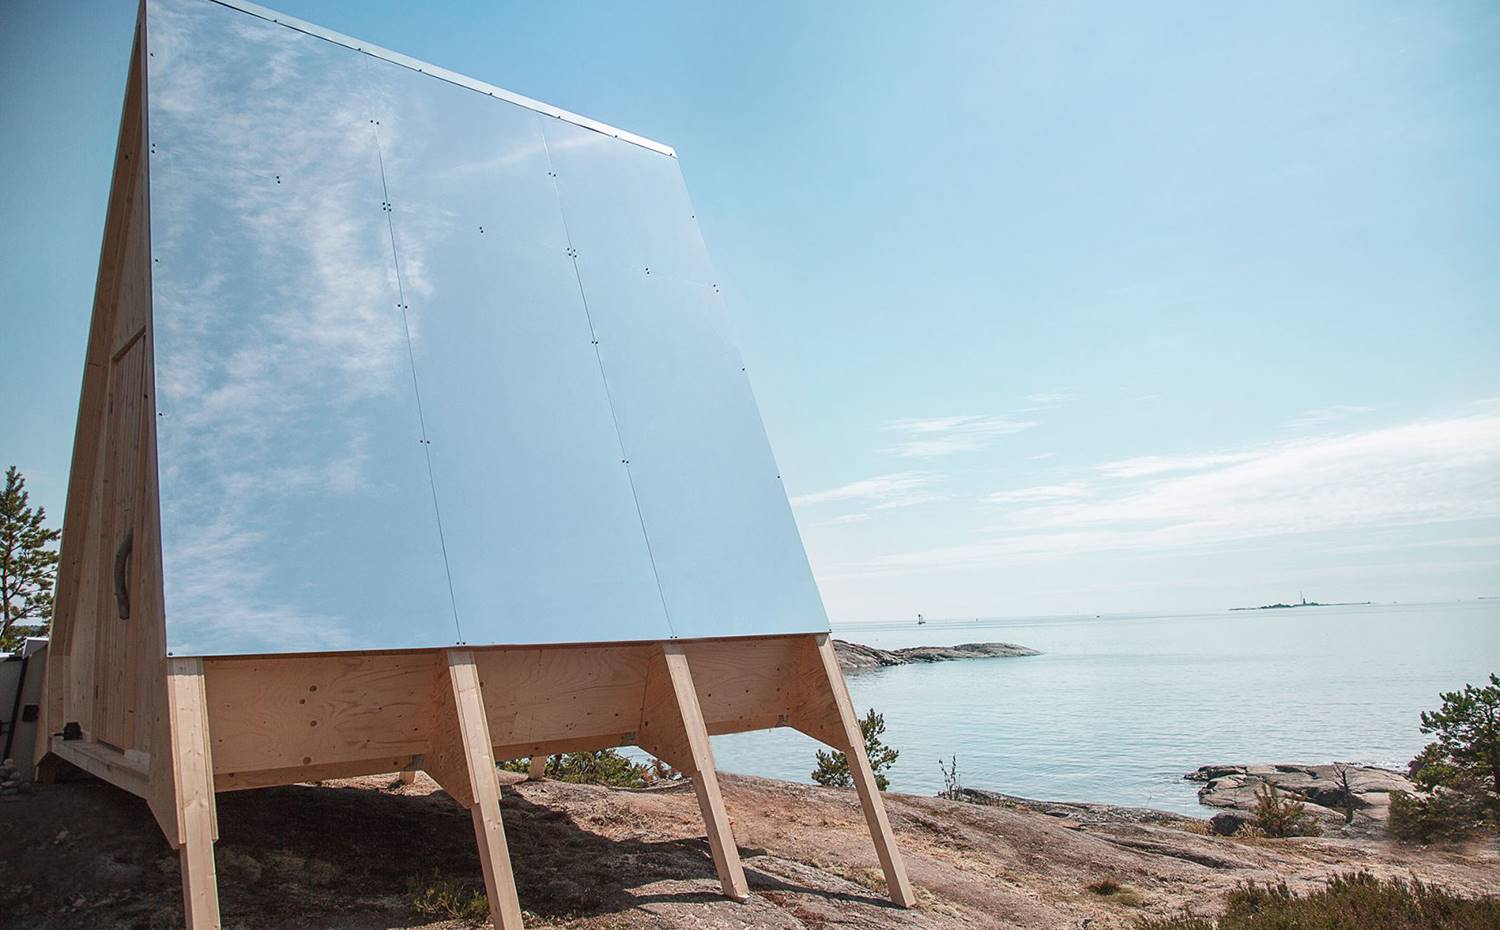 Lateral cabaña ecológica, paneles solares. Los paneles solares sostenibles y libres de emisiones fueron una opción natural e ideal para la cabina Nolla.